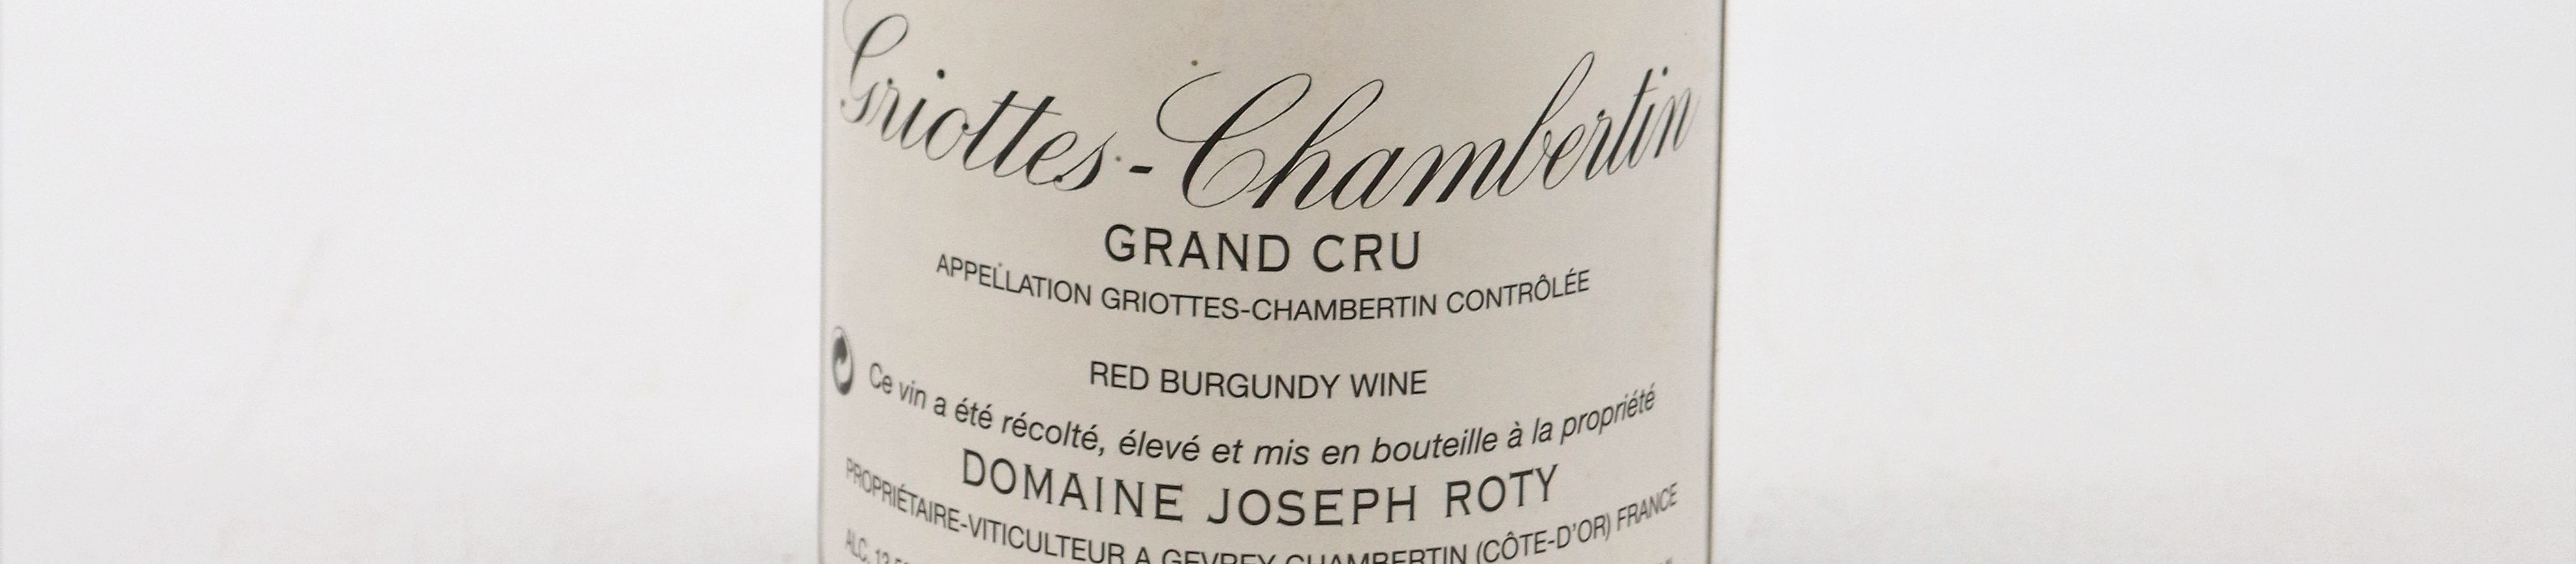 La photo montre une bouteille de vin du domaine Joseph Roty en Bourgogne